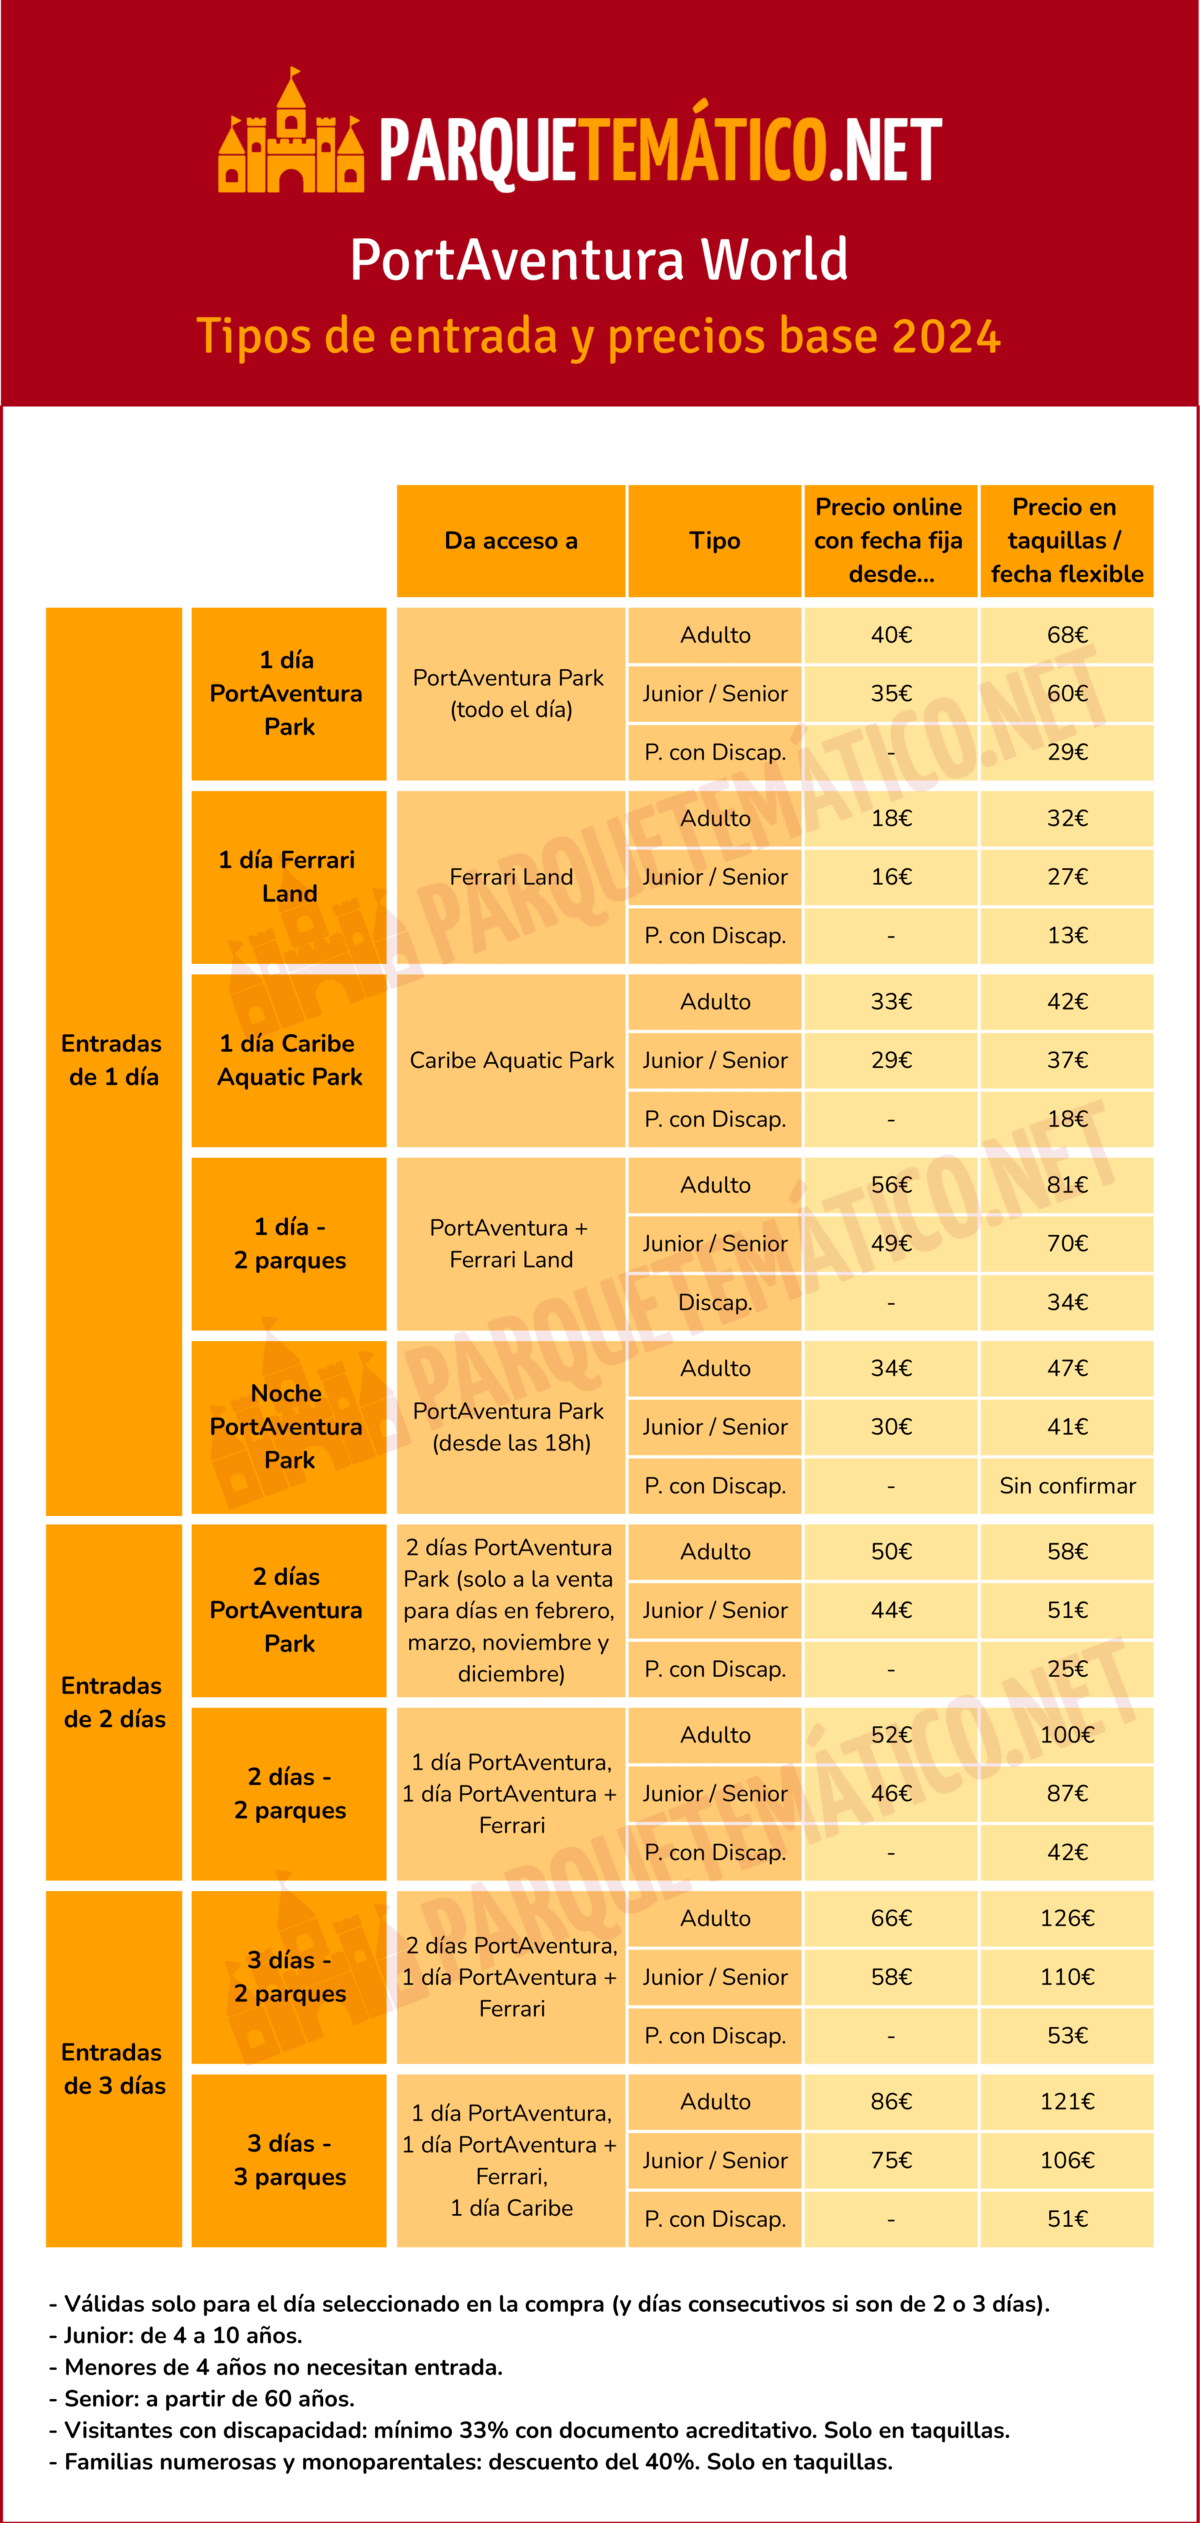 Tipos de entradas y precios de PortAventura World en 2024